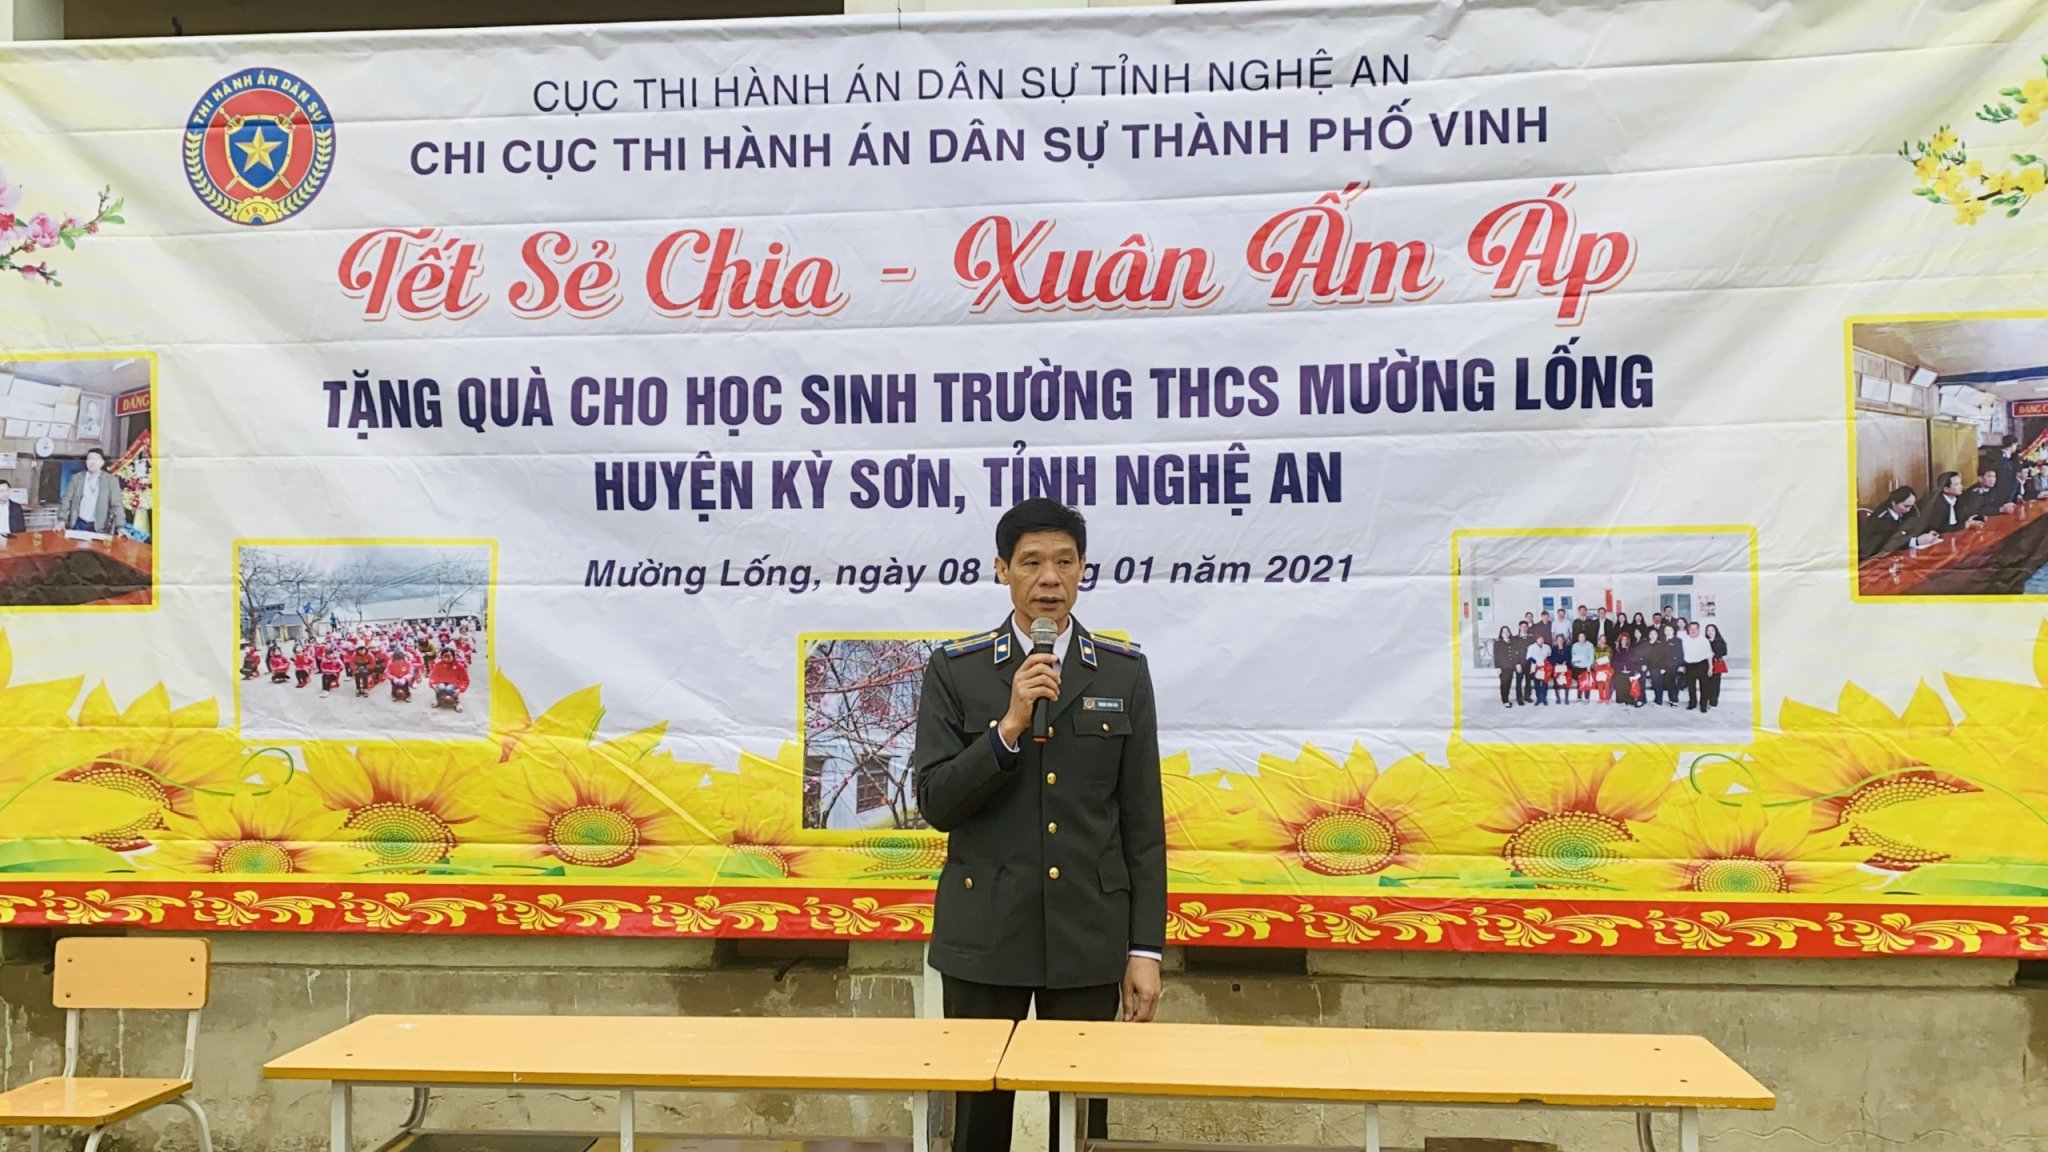 Chi cục Thi hành án dân sự thành phố Vinh động ủng hộ “ Tết vì người nghèo – Tân sửu 2021” tại Trường THCS Mường Lống, huyện Kỳ Sơn, tỉnh Nghệ An